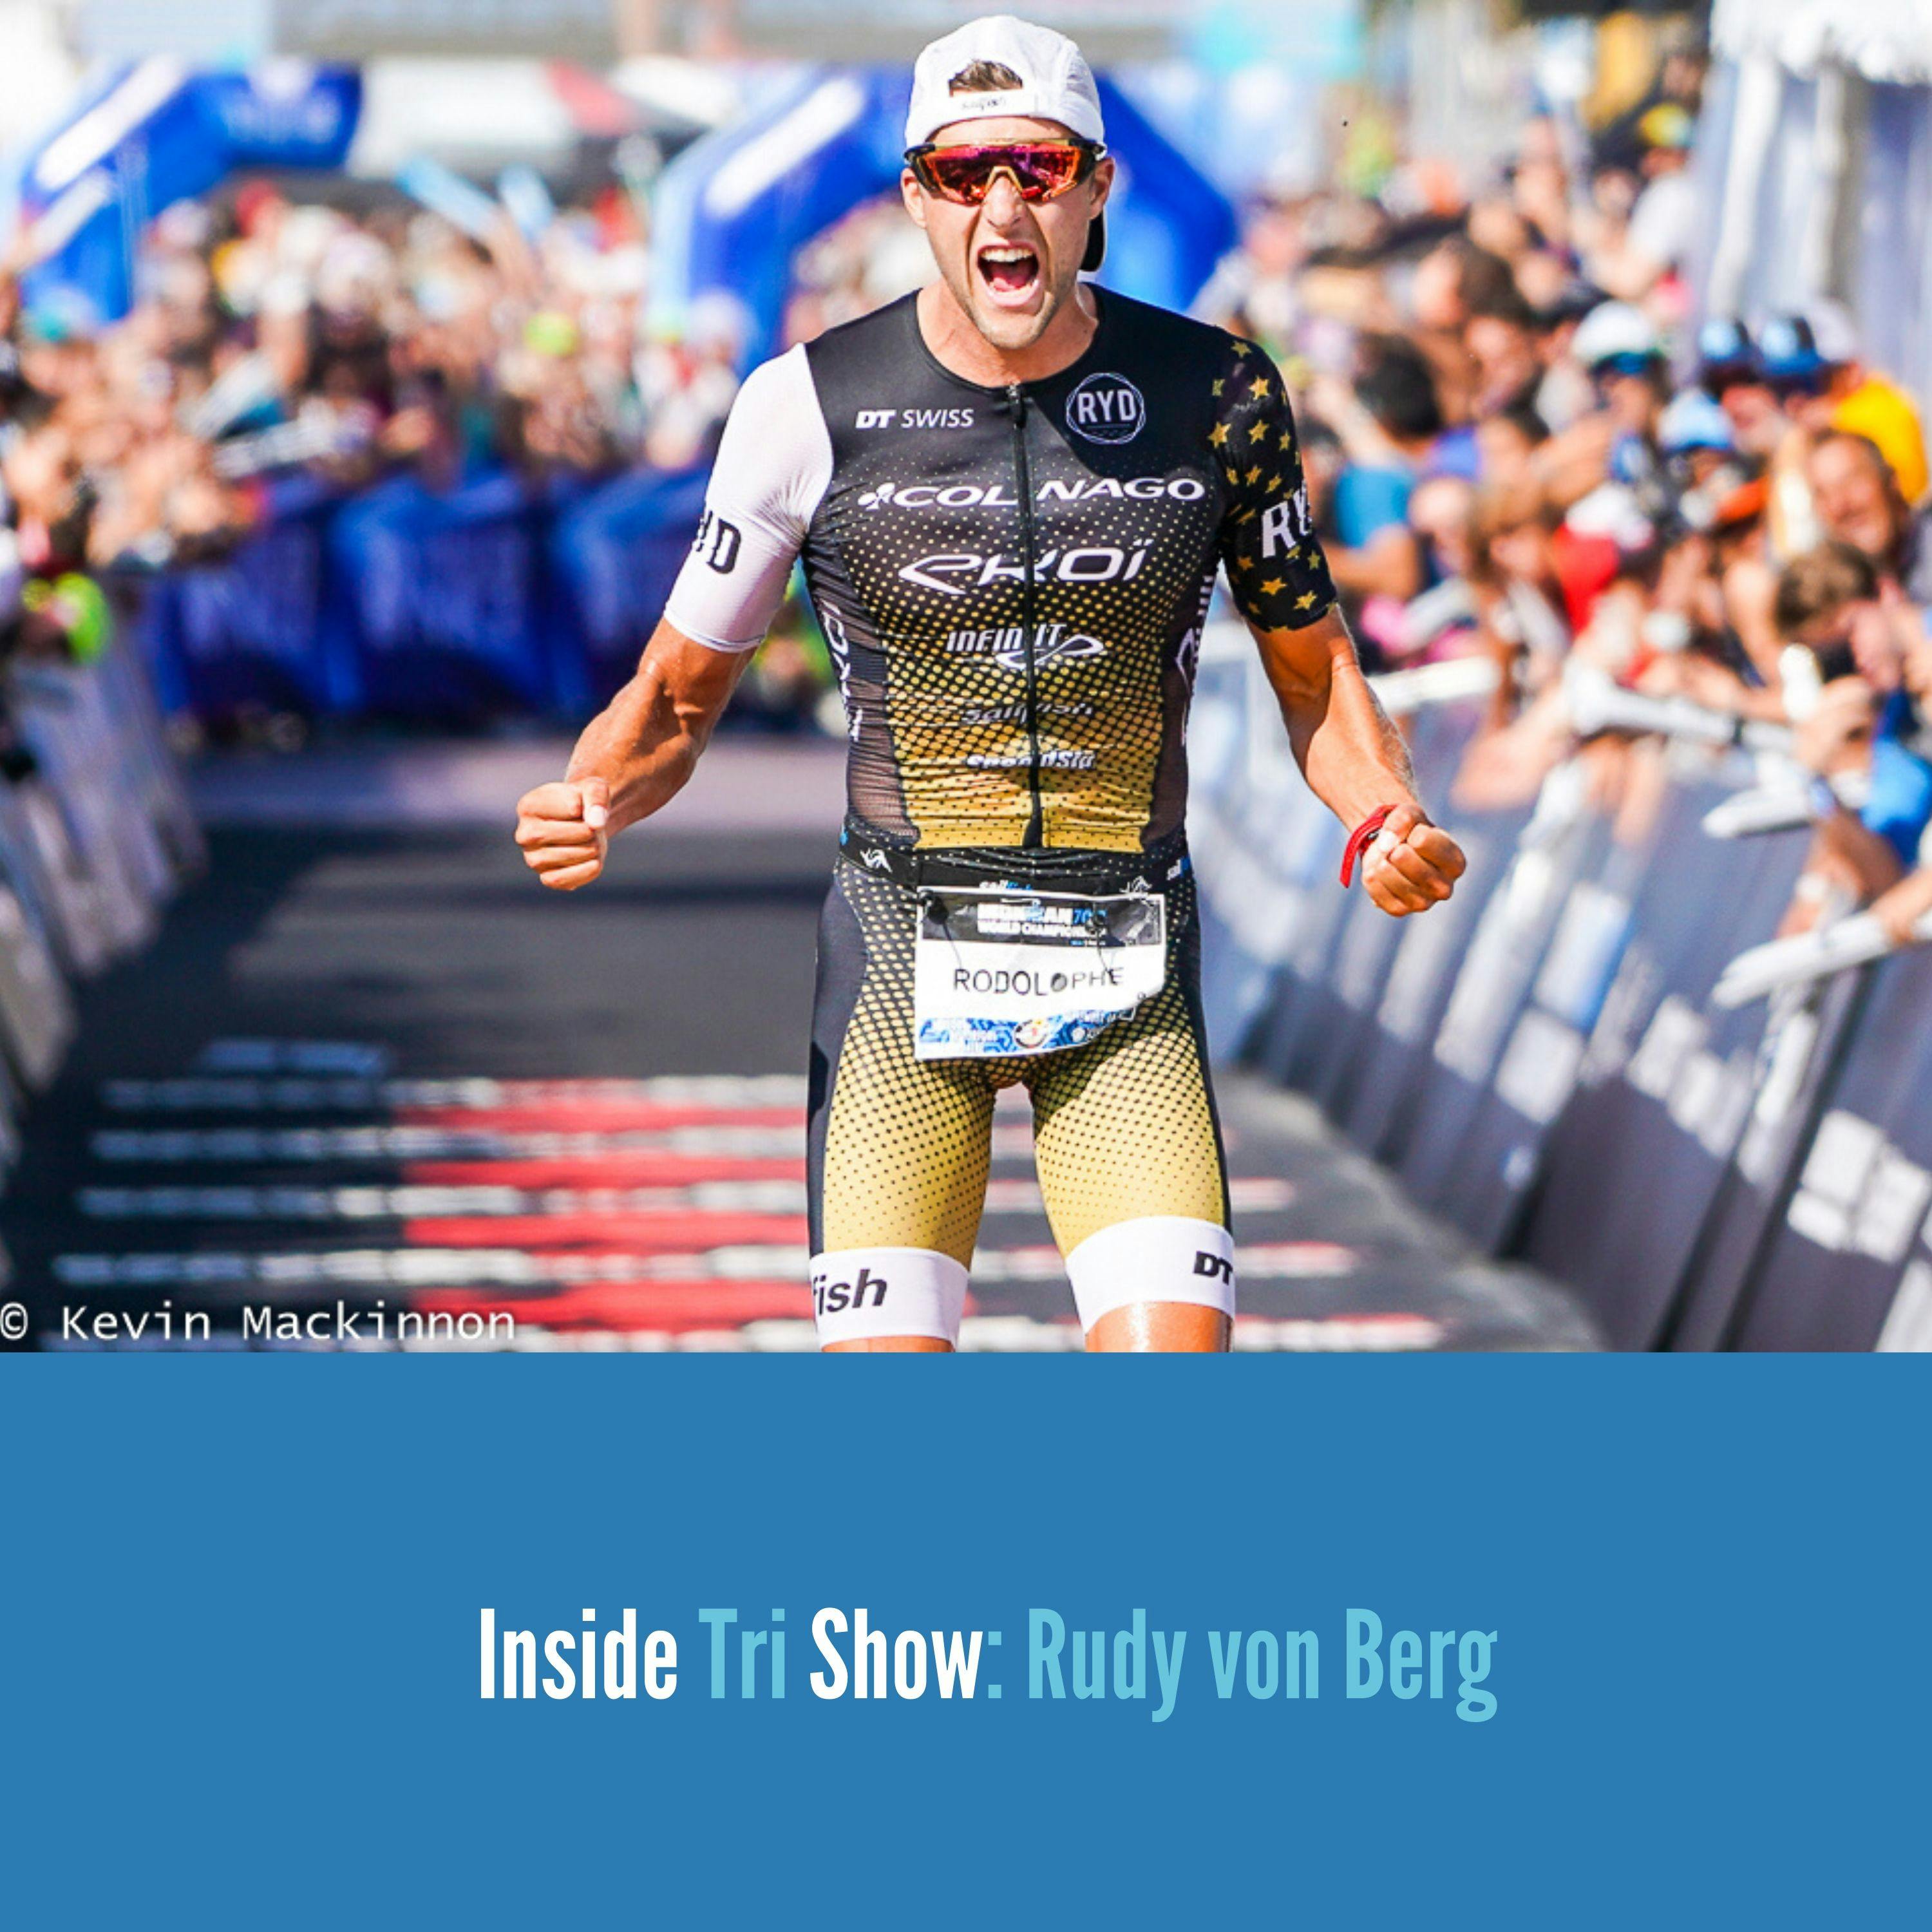 Rudy von Berg: Ironman World Champion in the making